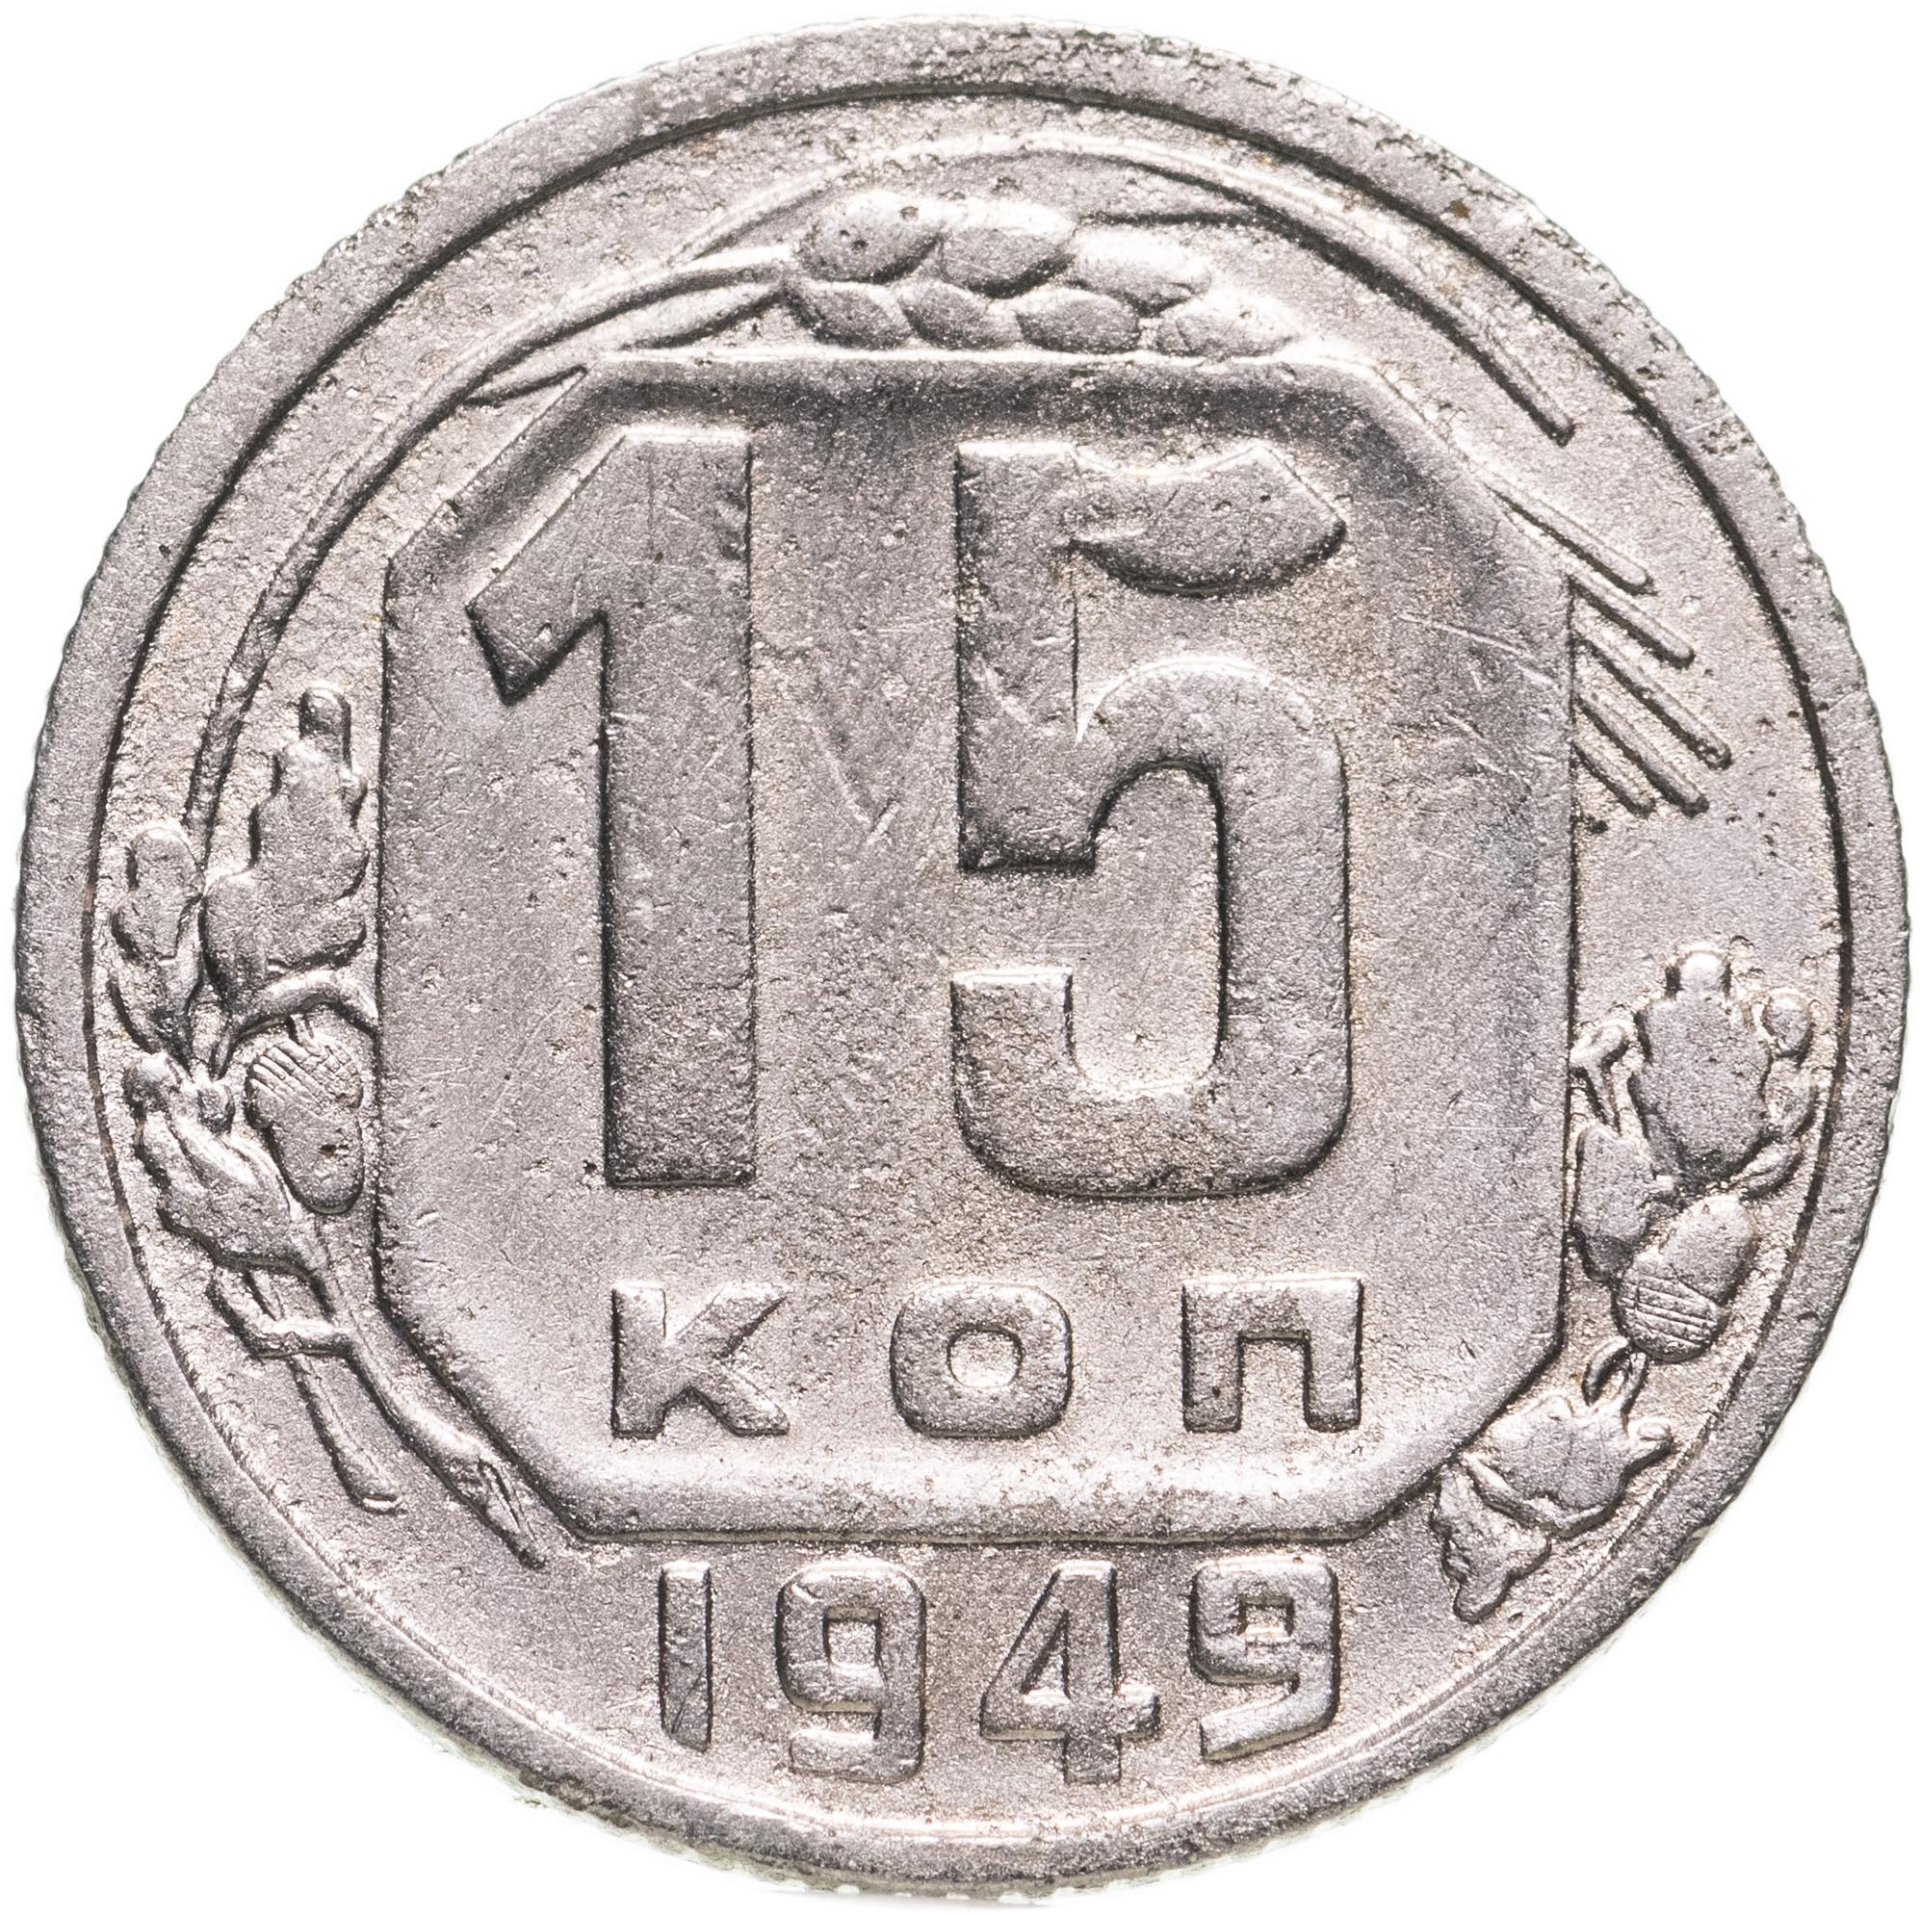 20 копеек 1949. 15 Копеек 1945. 15 Копеек 1941. Монета 20 копеек 1939 года. Монета 1953.